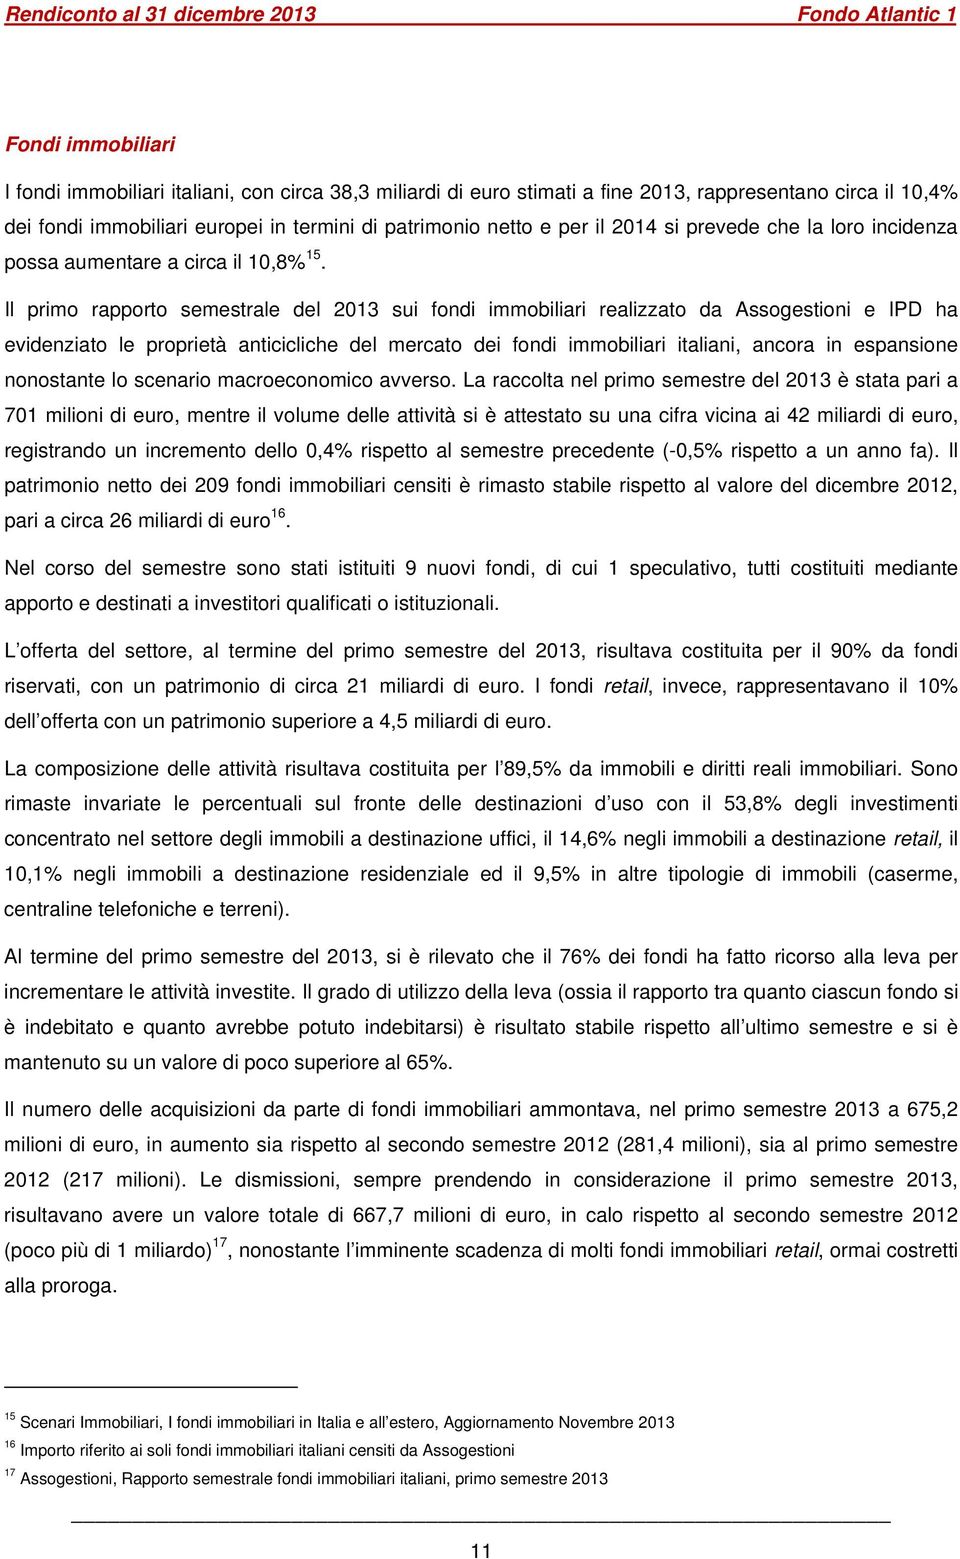 Il primo rapporto semestrale del 2013 sui fondi immobiliari realizzato da Assogestioni e IPD ha evidenziato le proprietà anticicliche del mercato dei fondi immobiliari italiani, ancora in espansione